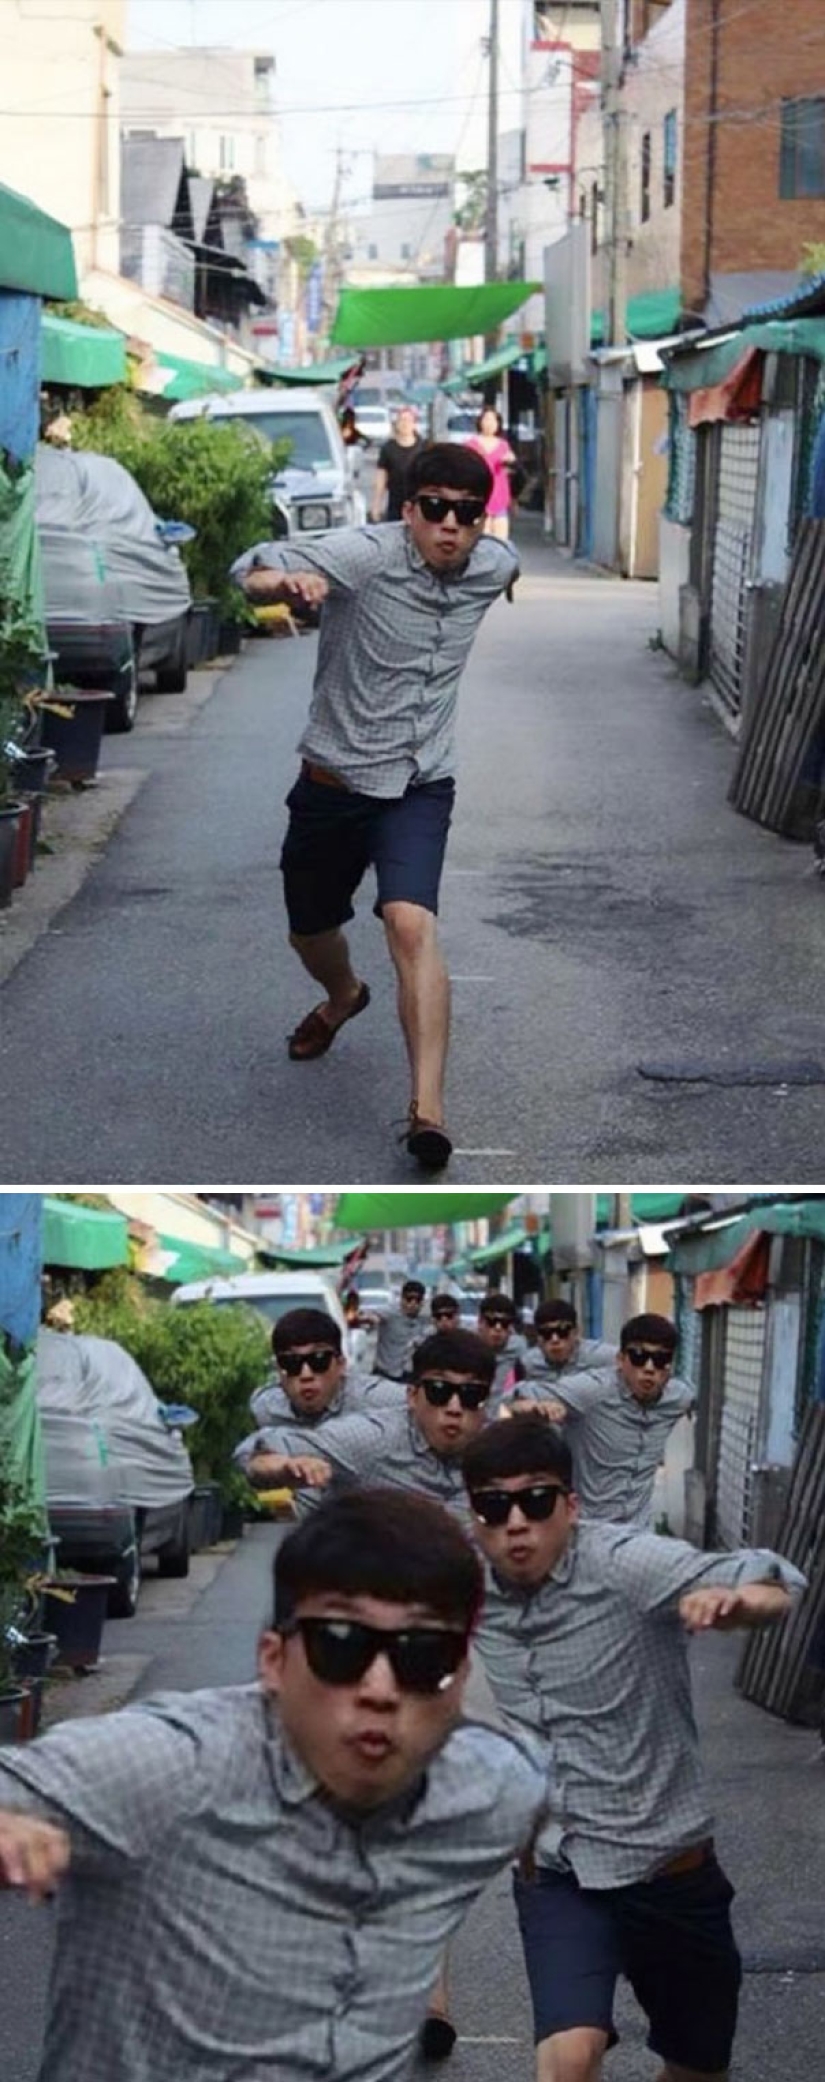 Los trolls coreanos de Photoshop son aún más insidiosos que los europeos